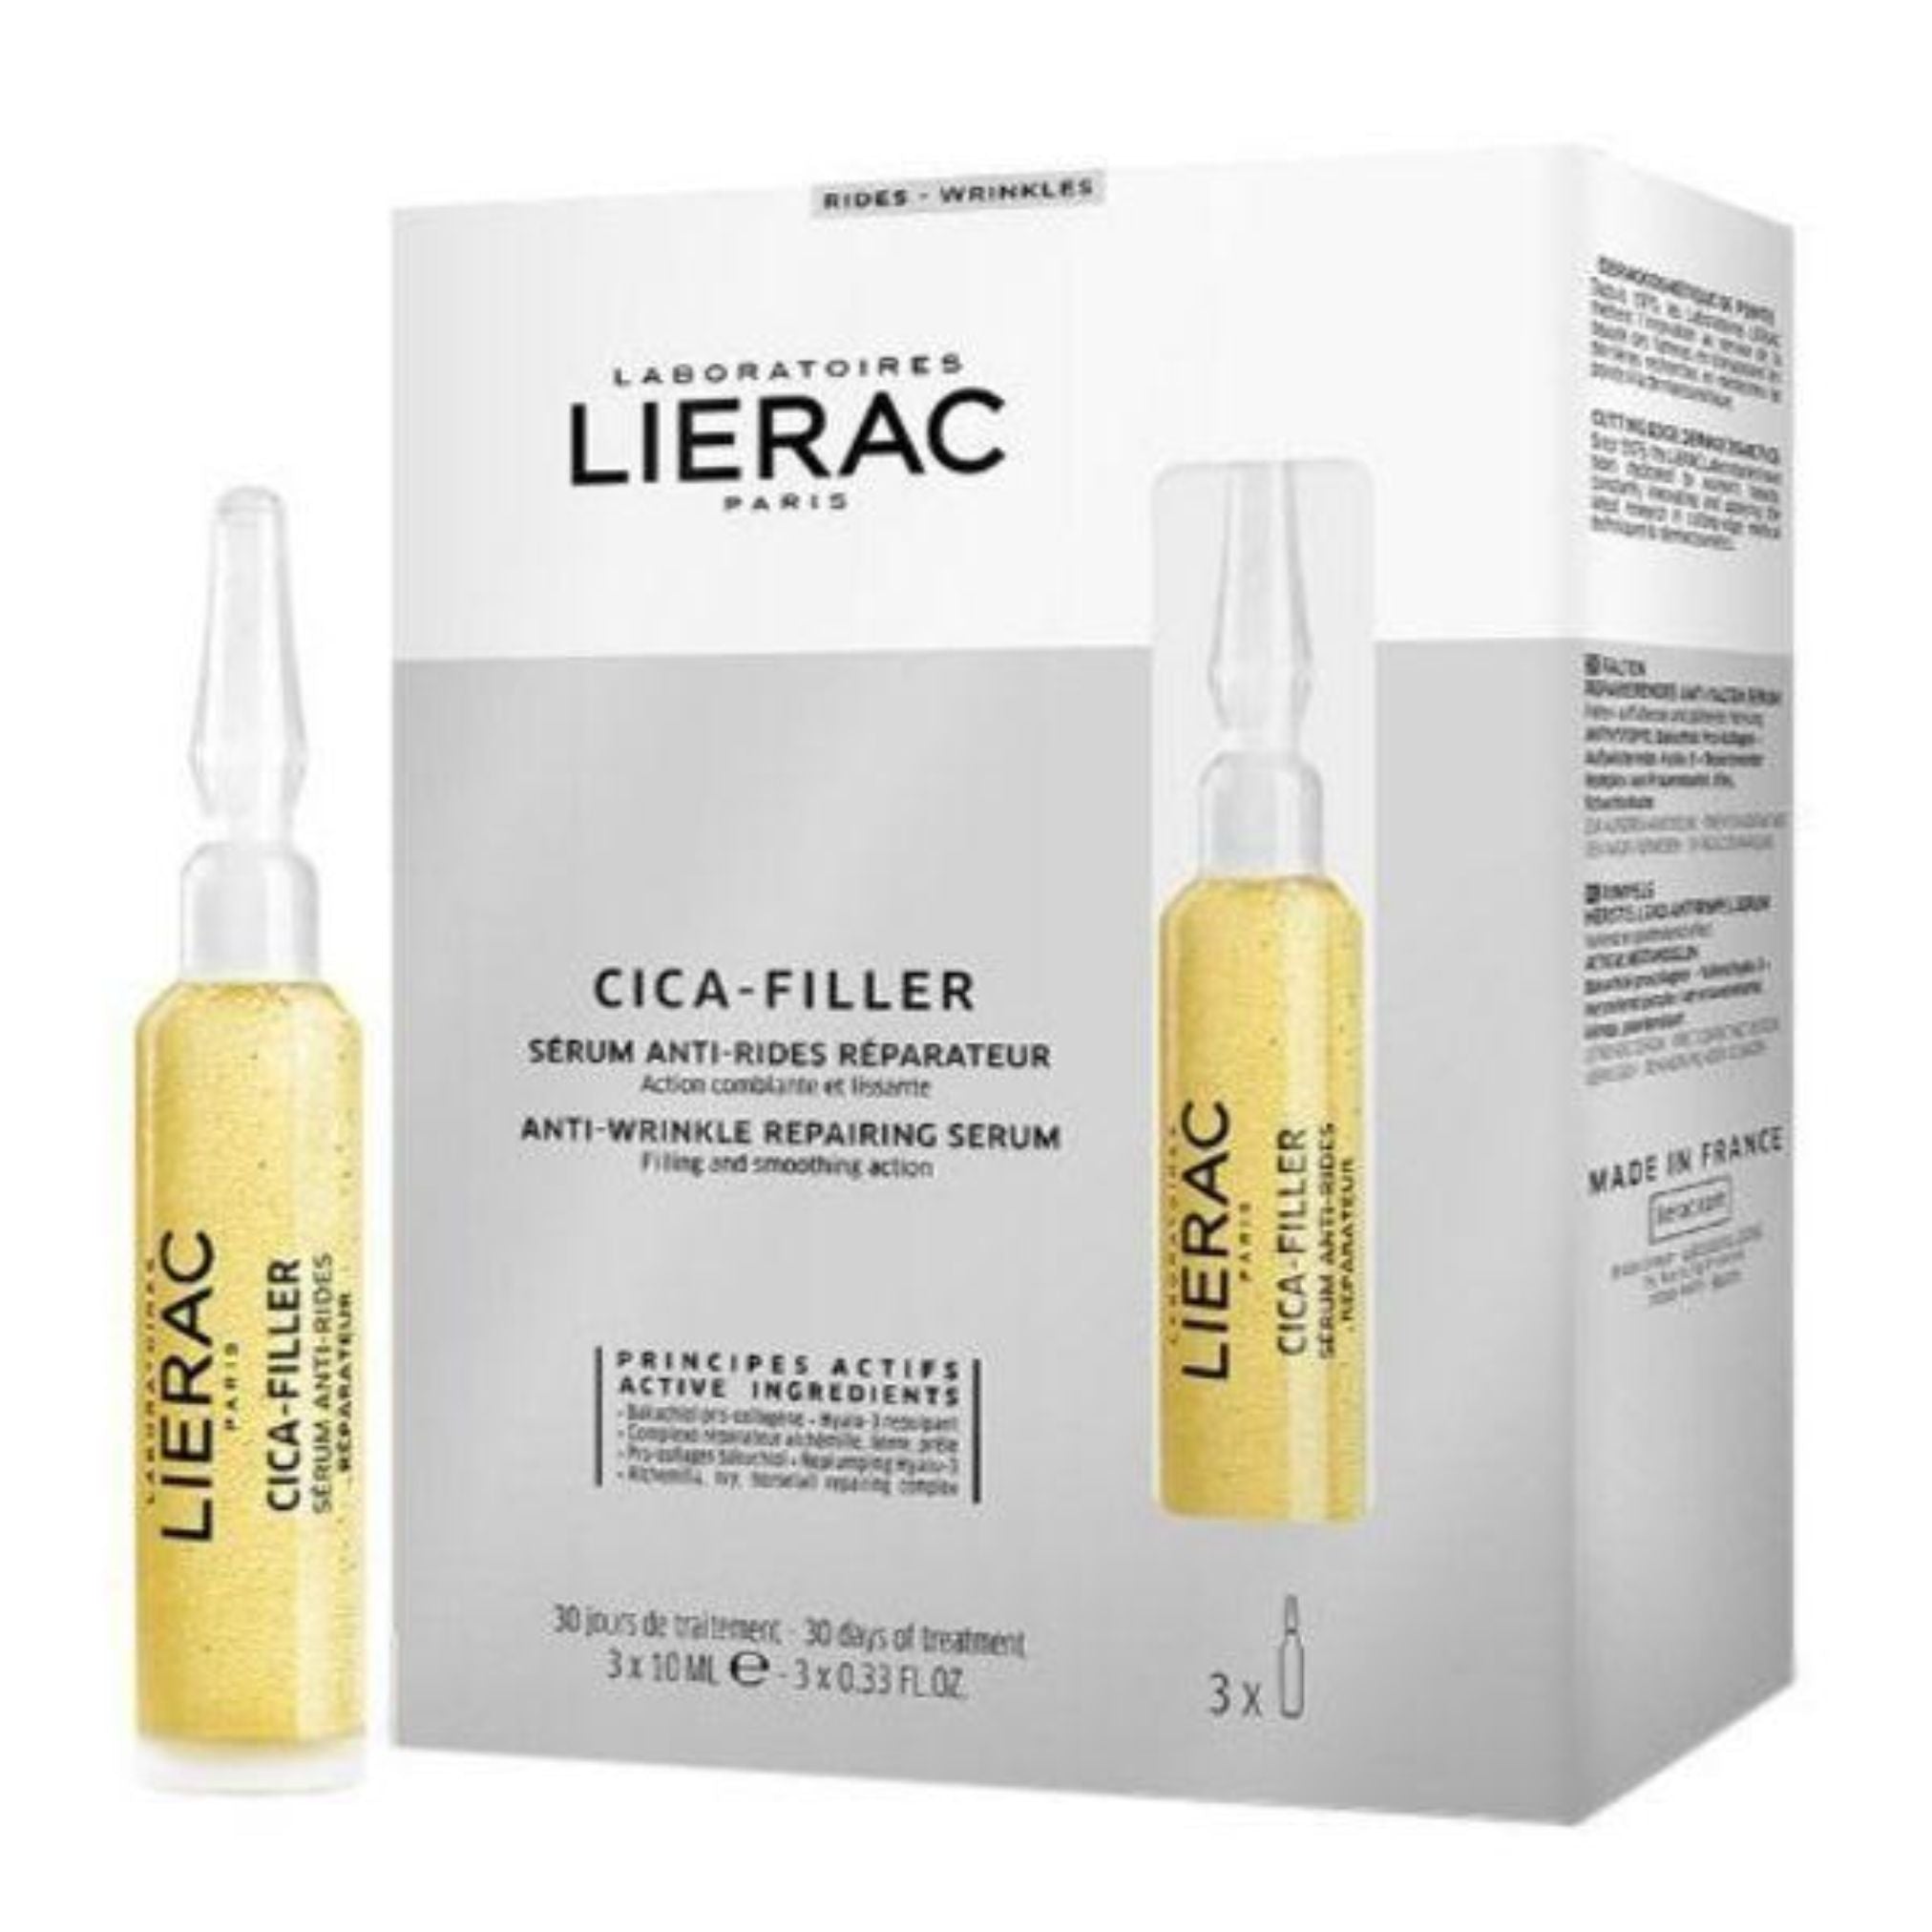 Lierac Cica-Filler Anti-Wrinkle Repairing Serum 3x10ml